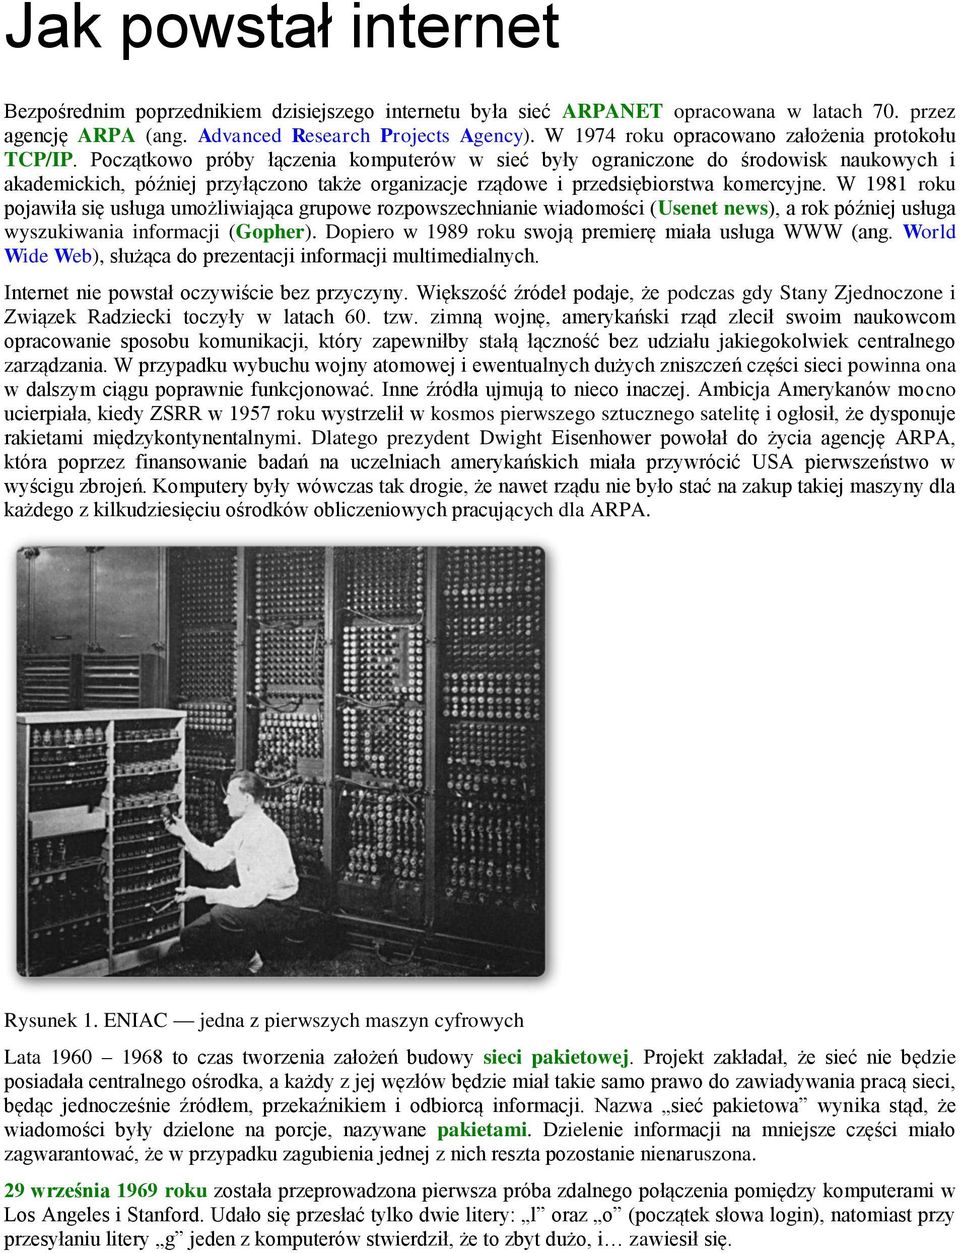 Początkowo próby łączenia komputerów w sieć były ograniczone do środowisk naukowych i akademickich, później przyłączono także organizacje rządowe i przedsiębiorstwa komercyjne.